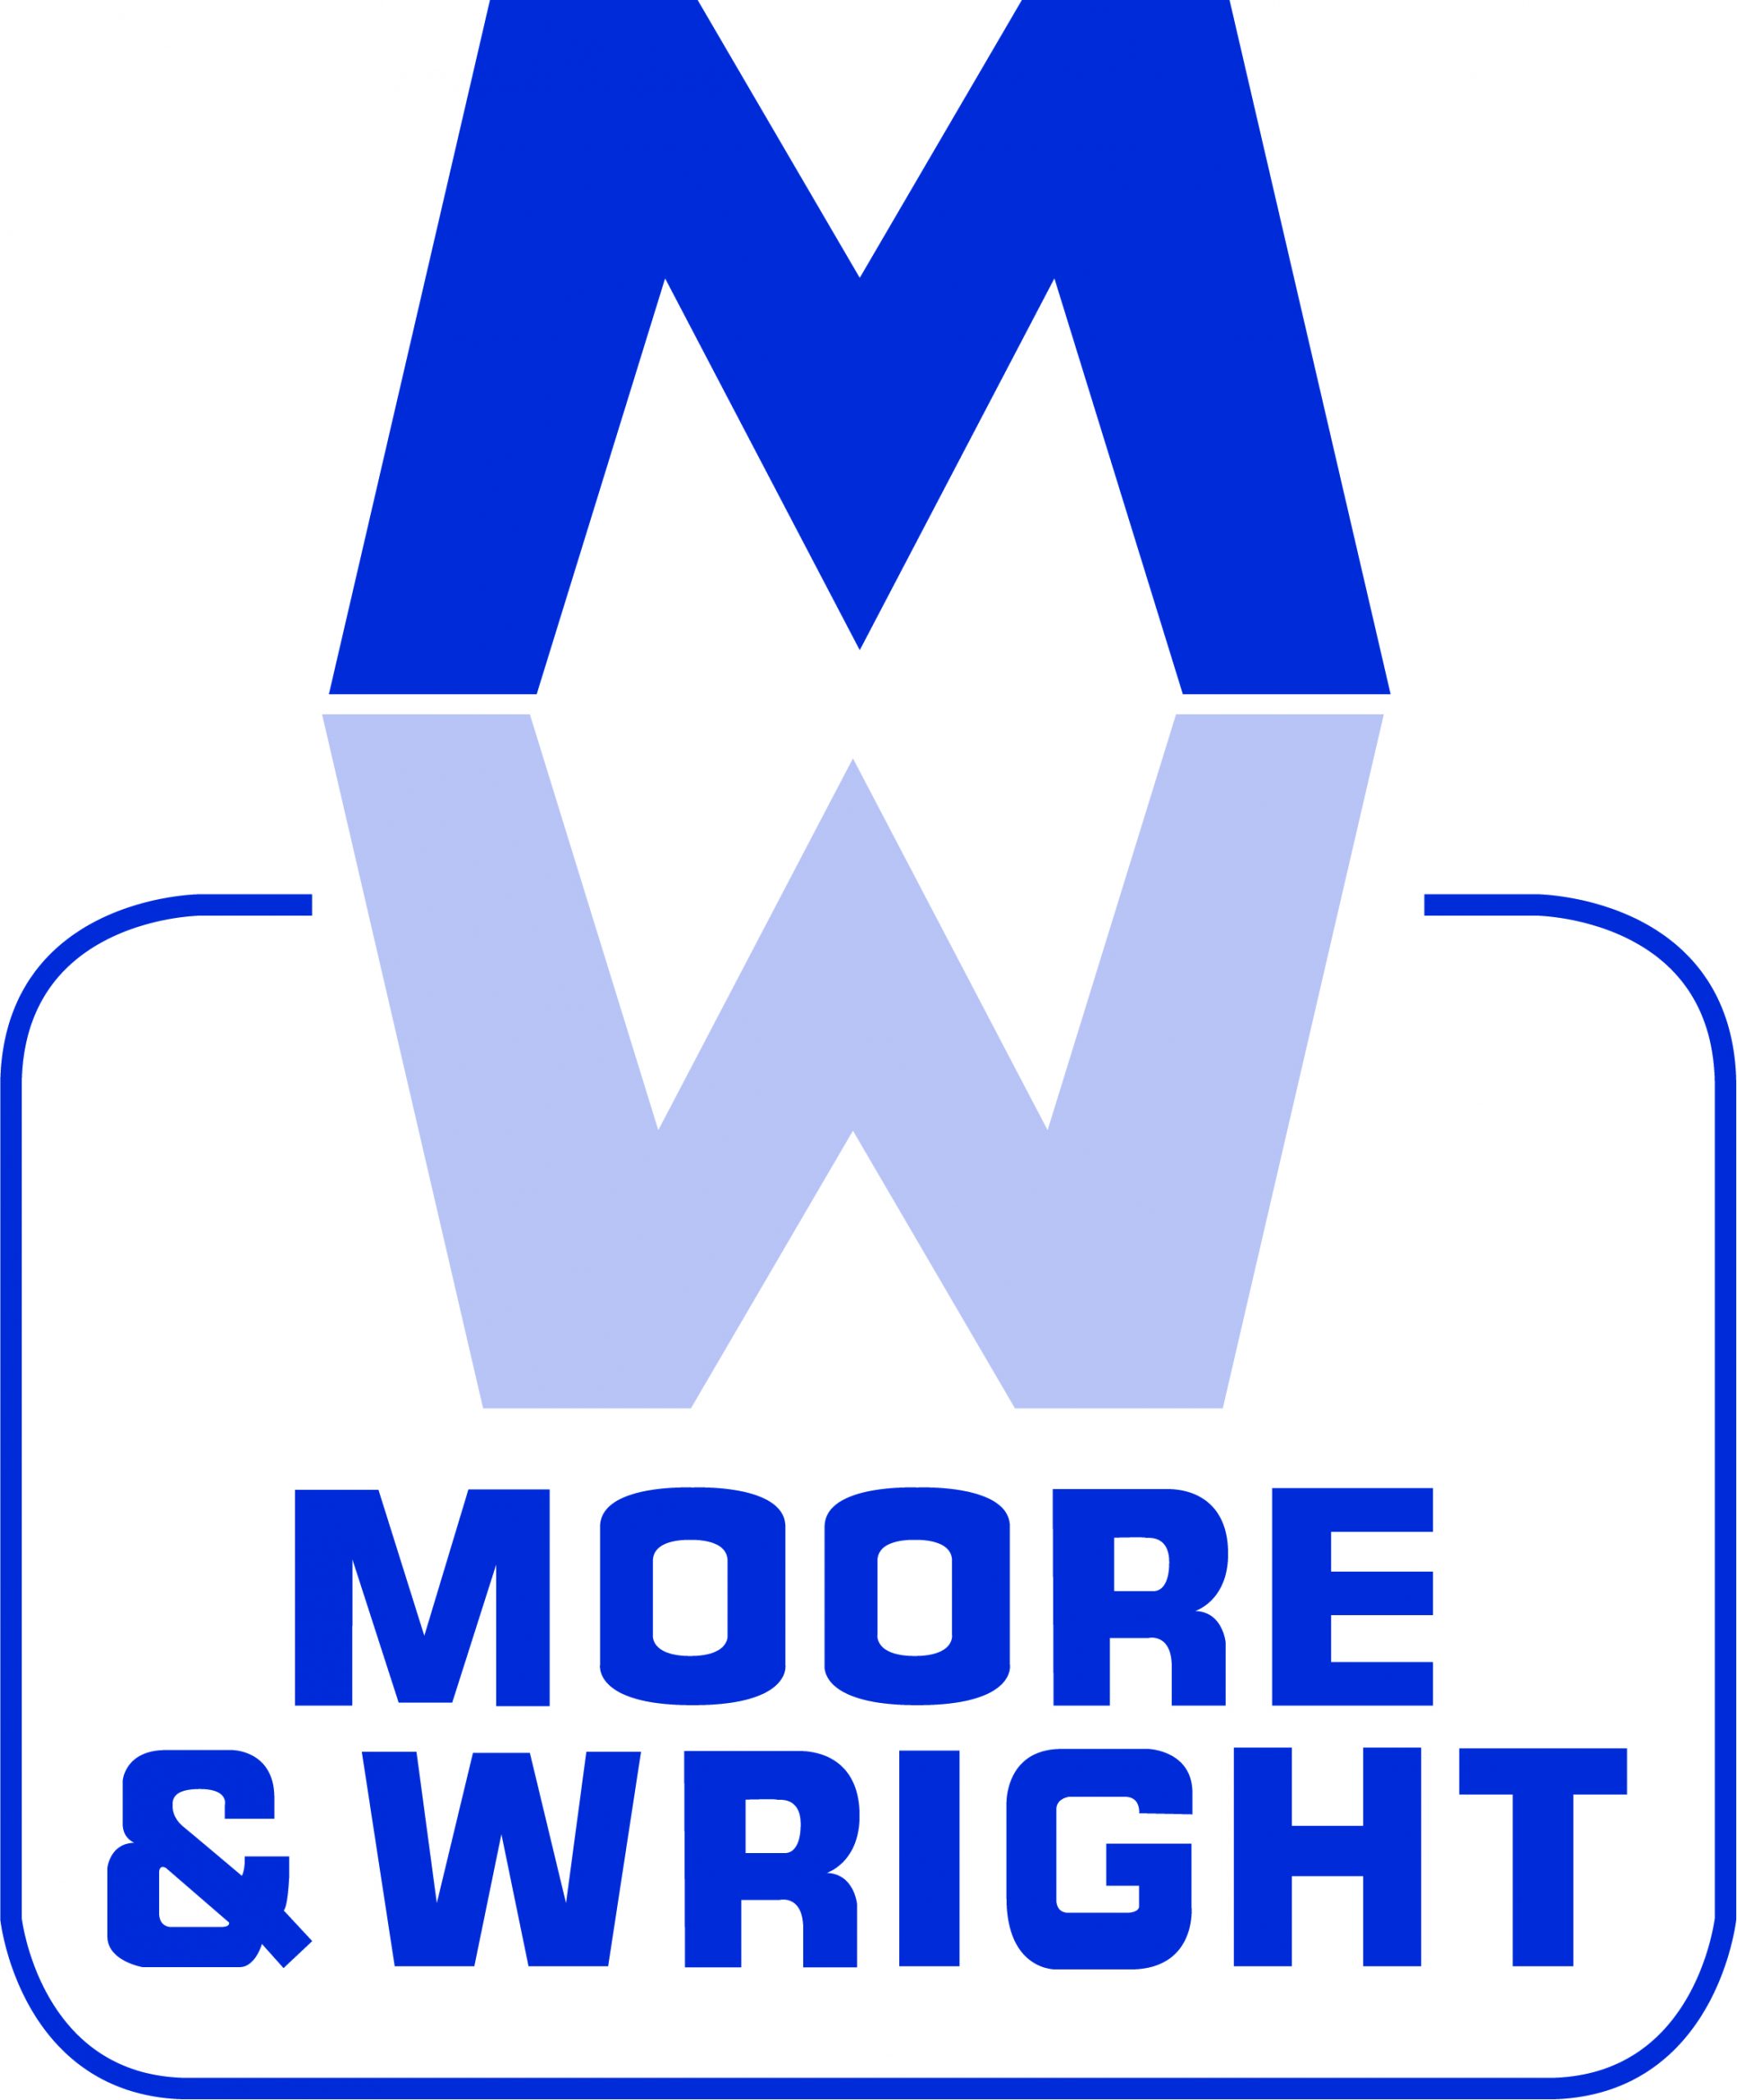 Moore_&_Wright_CMYK_Logo